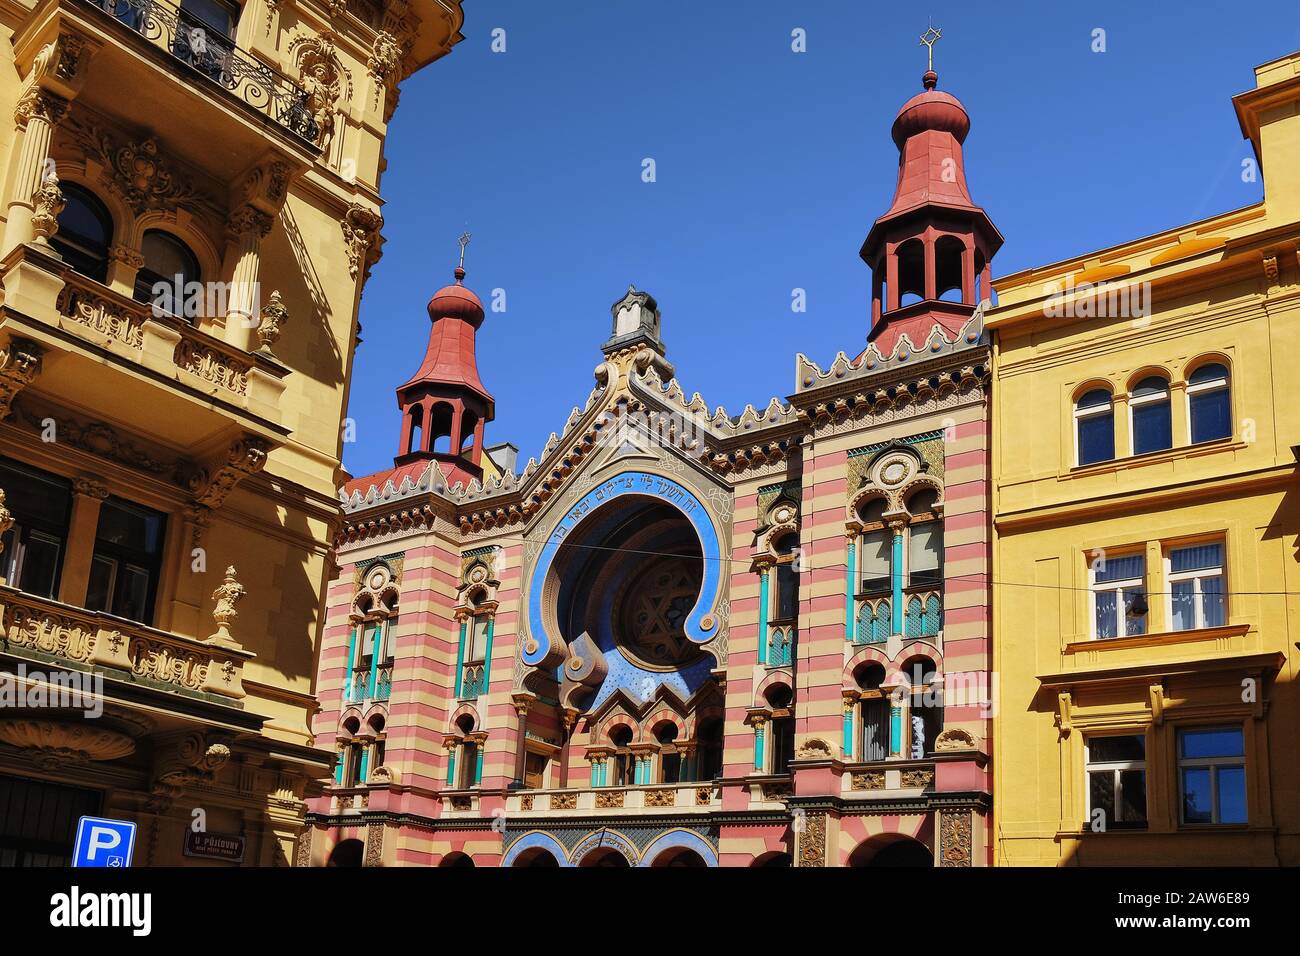 Architettura moresca della sinagoga giubilare, sinagoga ebraica di Gerusalemme; sinagoga di Jeruzalémská; cupole di Jeruzalémská e archi a ferro di cavallo, Praga Foto Stock